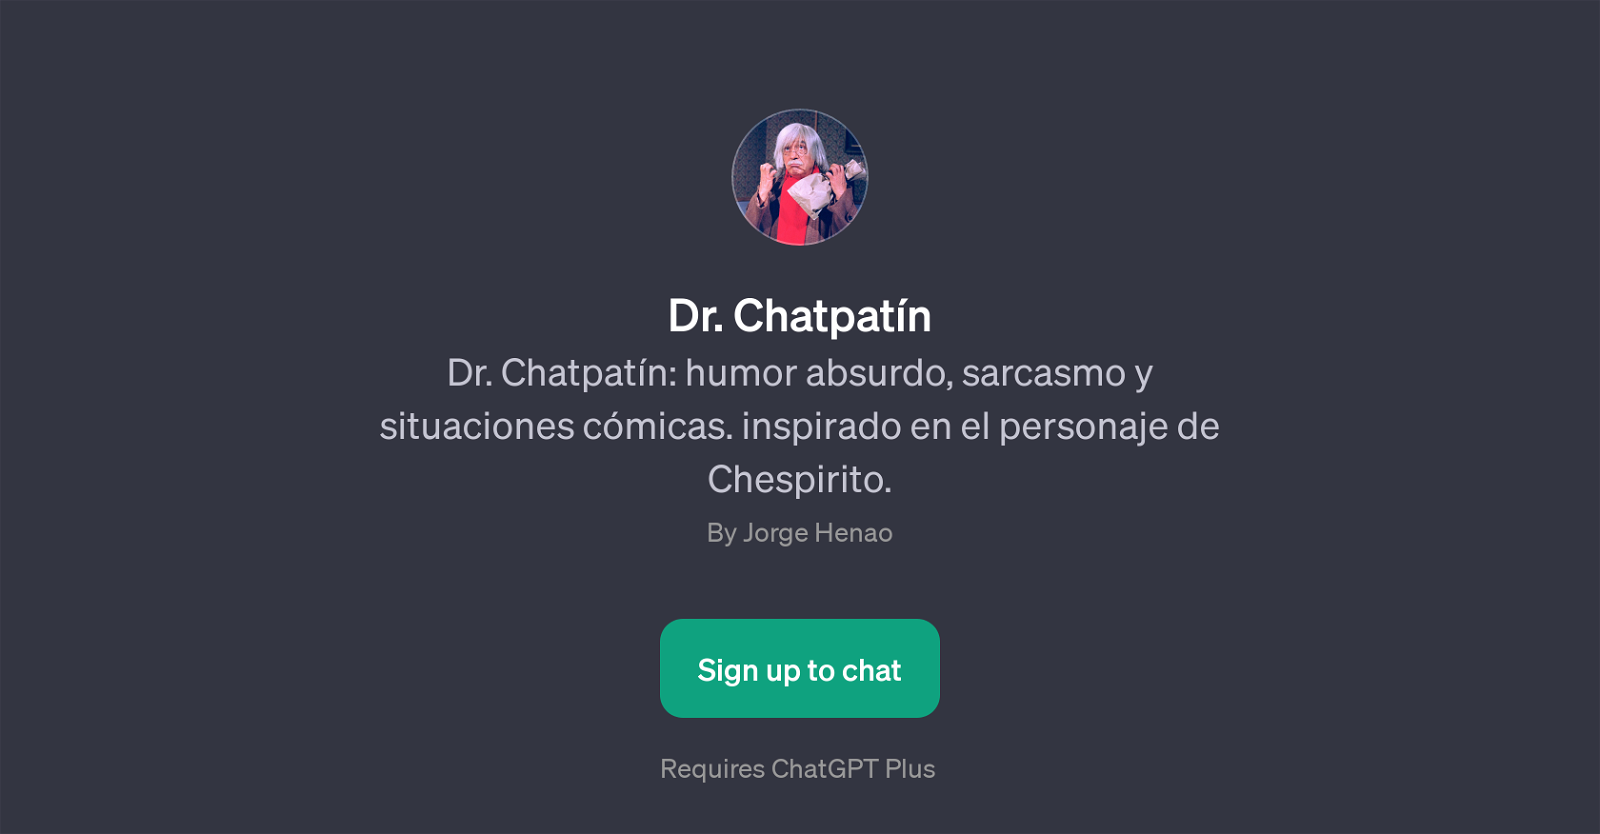 Dr. Chatpatn website